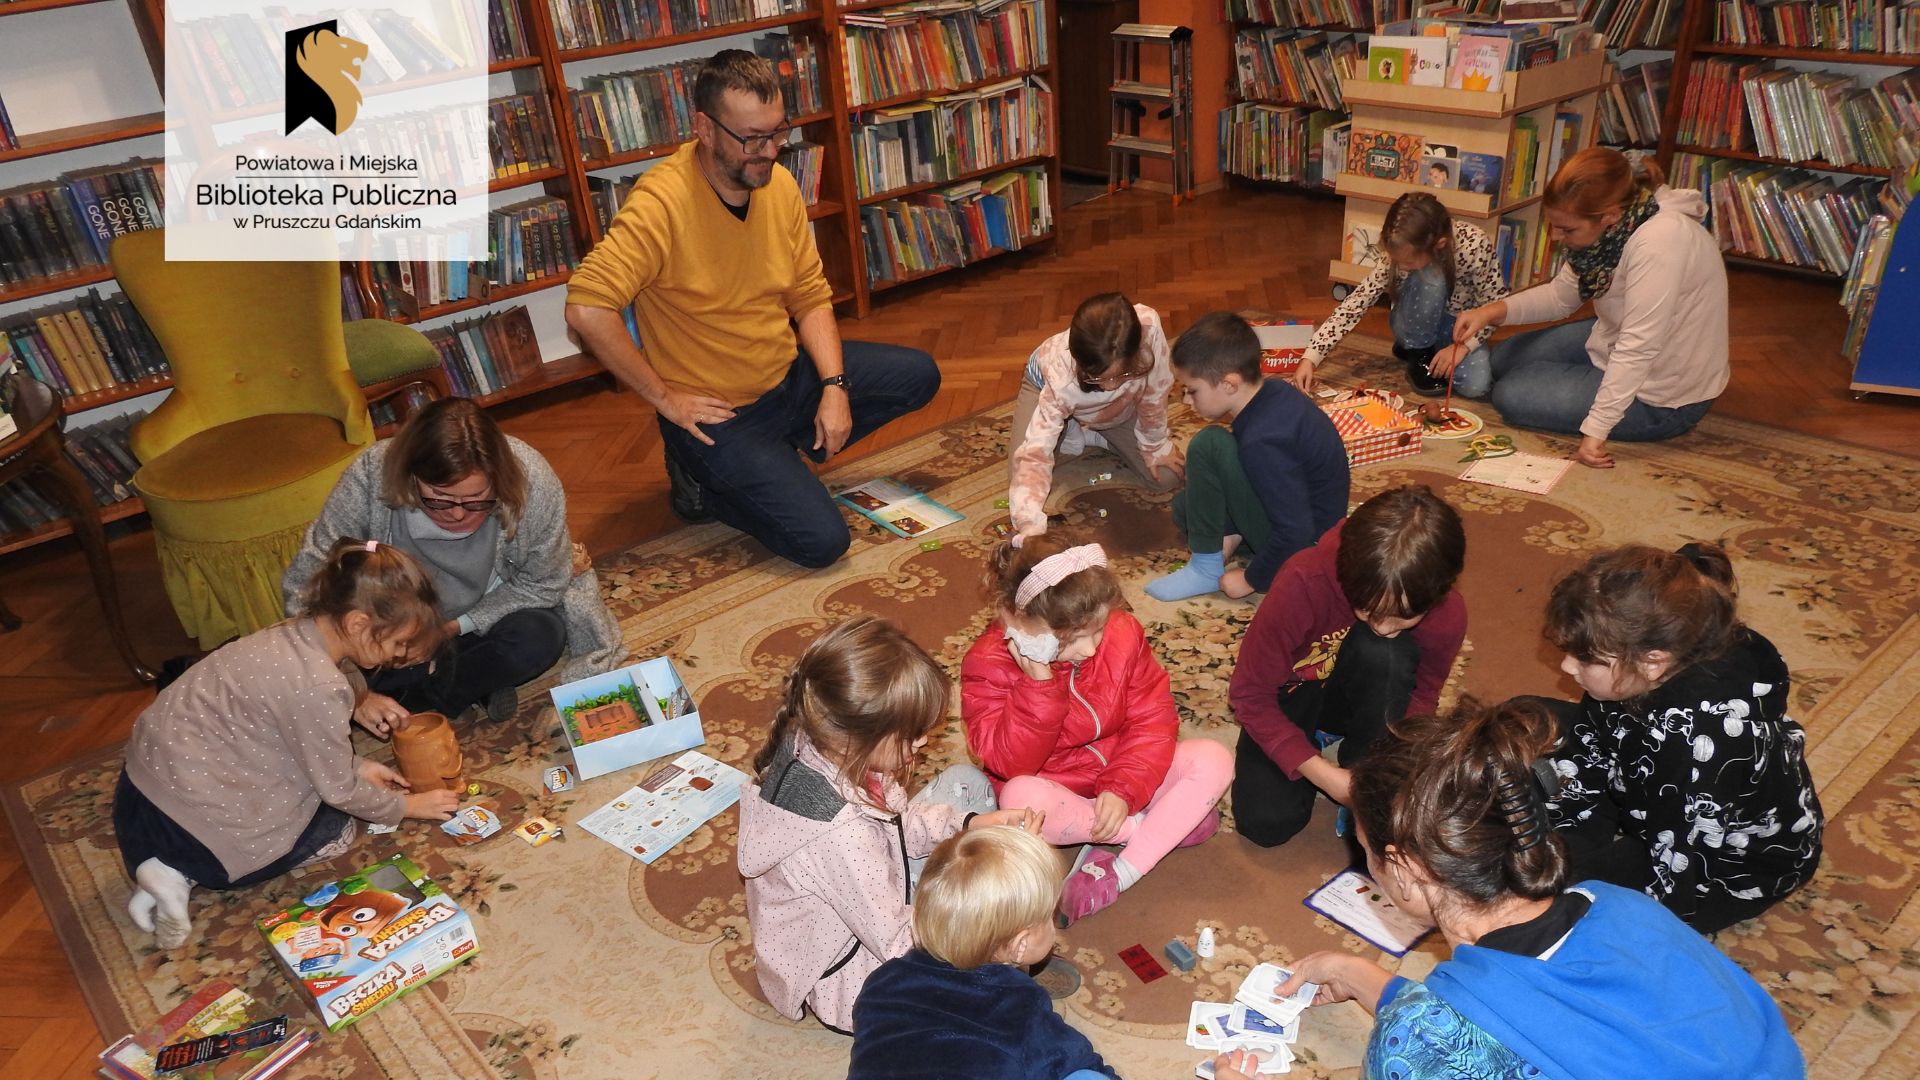 Dziewięcioro dzieci oraz cztery osoby dorosłe siedzą lub kucają na dywanie. Tworzą cztery grupy. Przed każdą z grup leży rozłożona gra planszowa. W tle regały z książkami.